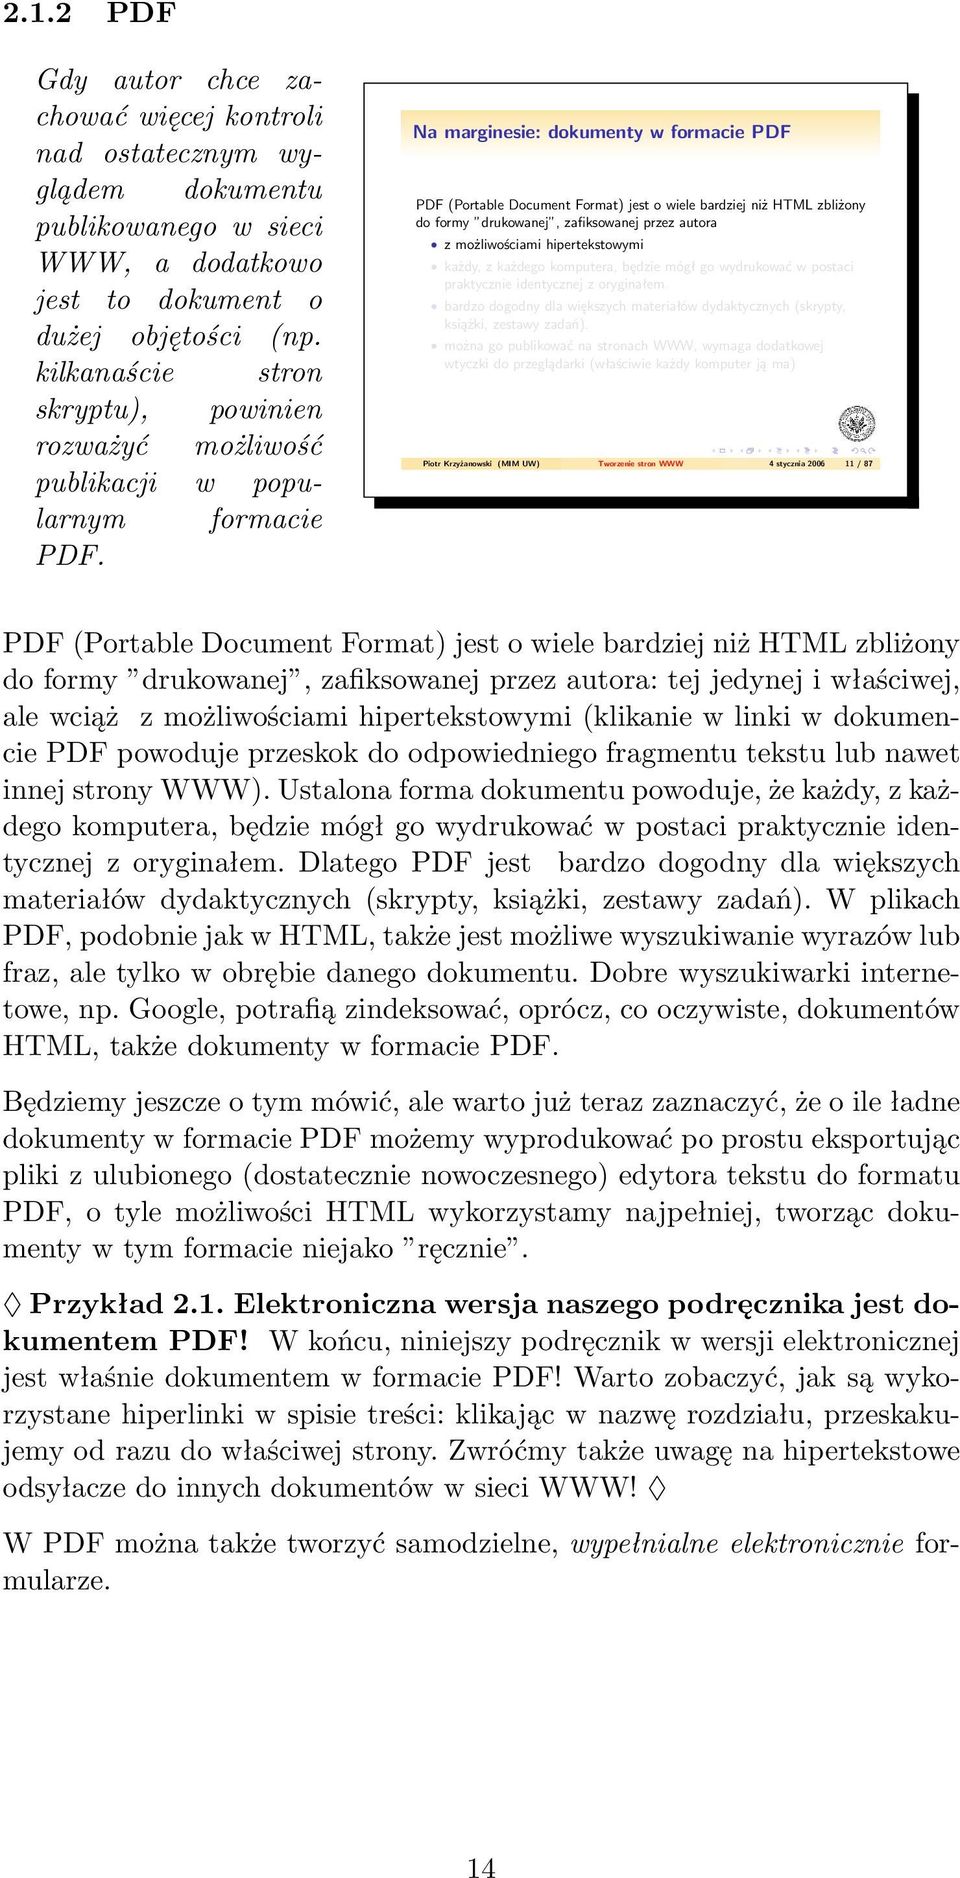 Na marginesie: dokumenty w formacie PDF PDF (Portable Document Format) jest o wiele bardziej niż HTML zbliżony do formy drukowanej, zafiksowanej przez autora z możliwościami hipertekstowymi każdy, z